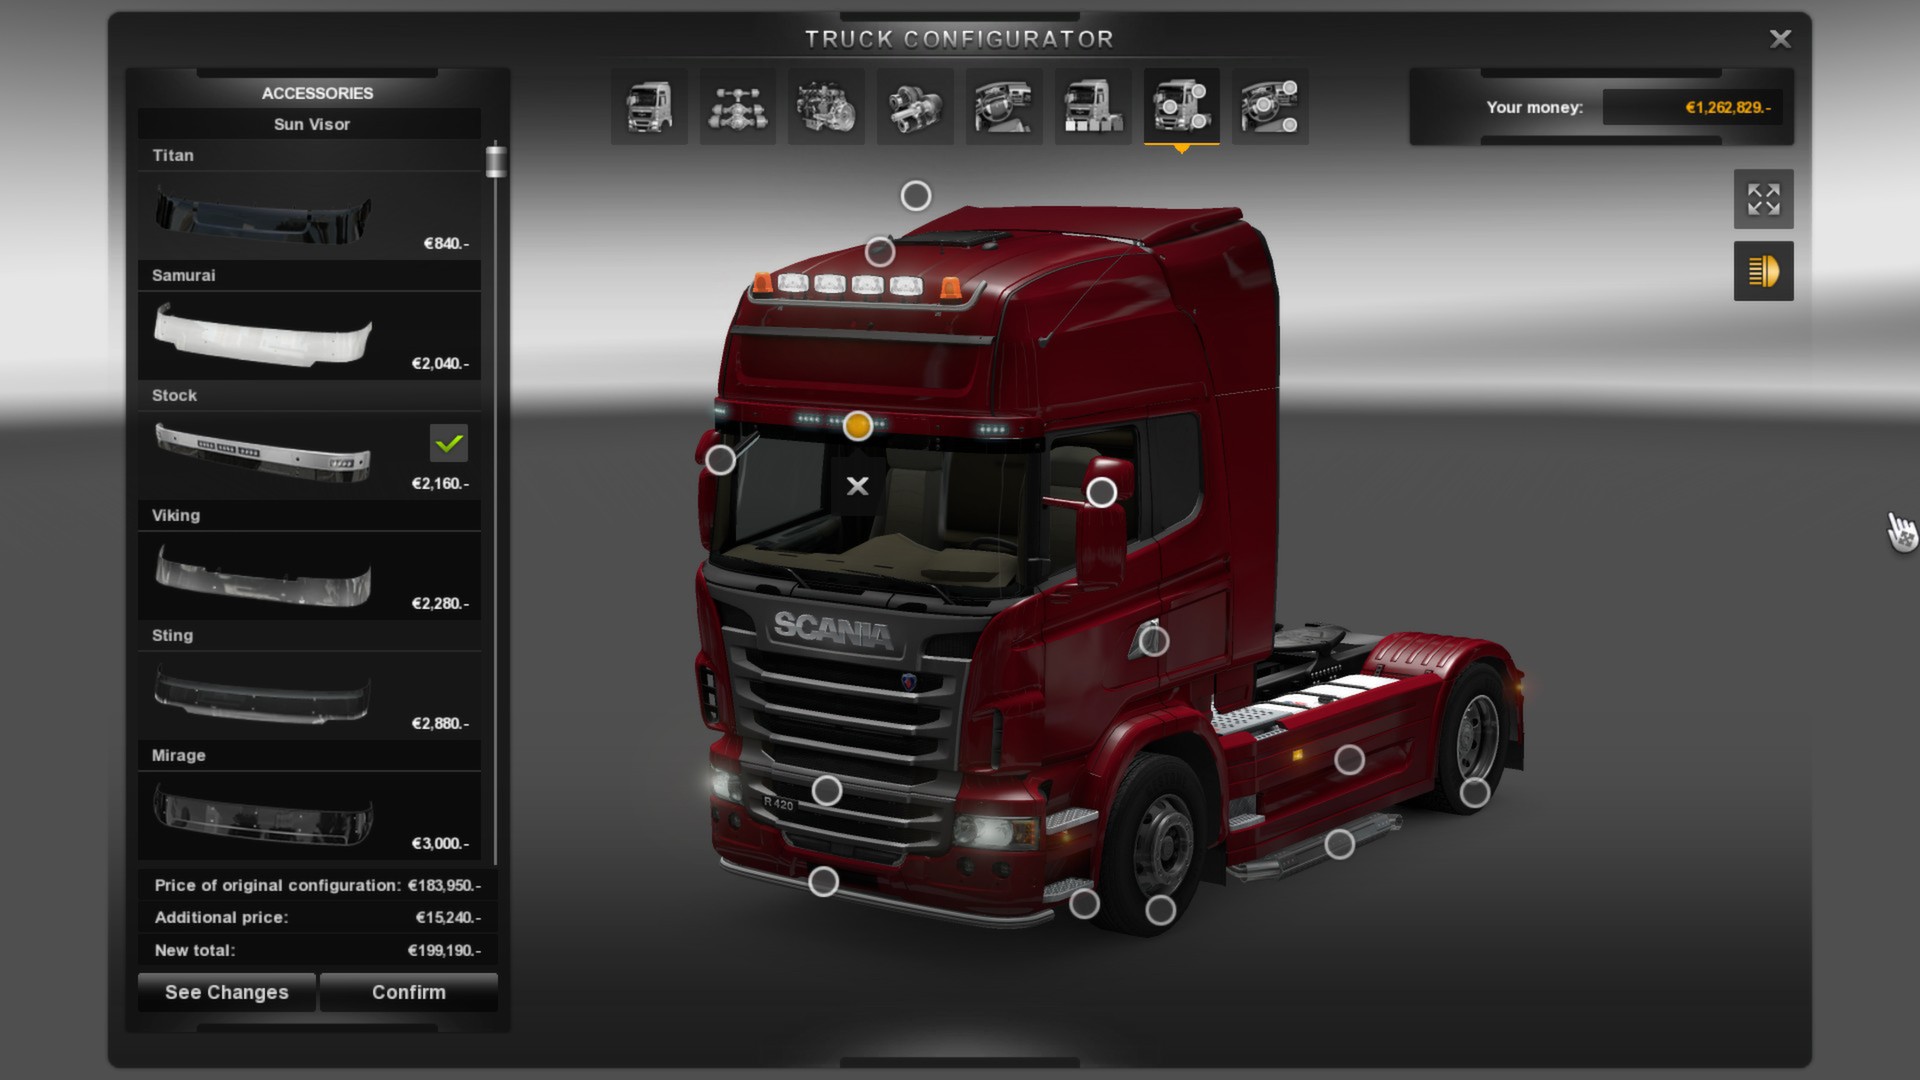 Gaming Live Euro Truck Simulator 2 : 1/2 : Sur la route 